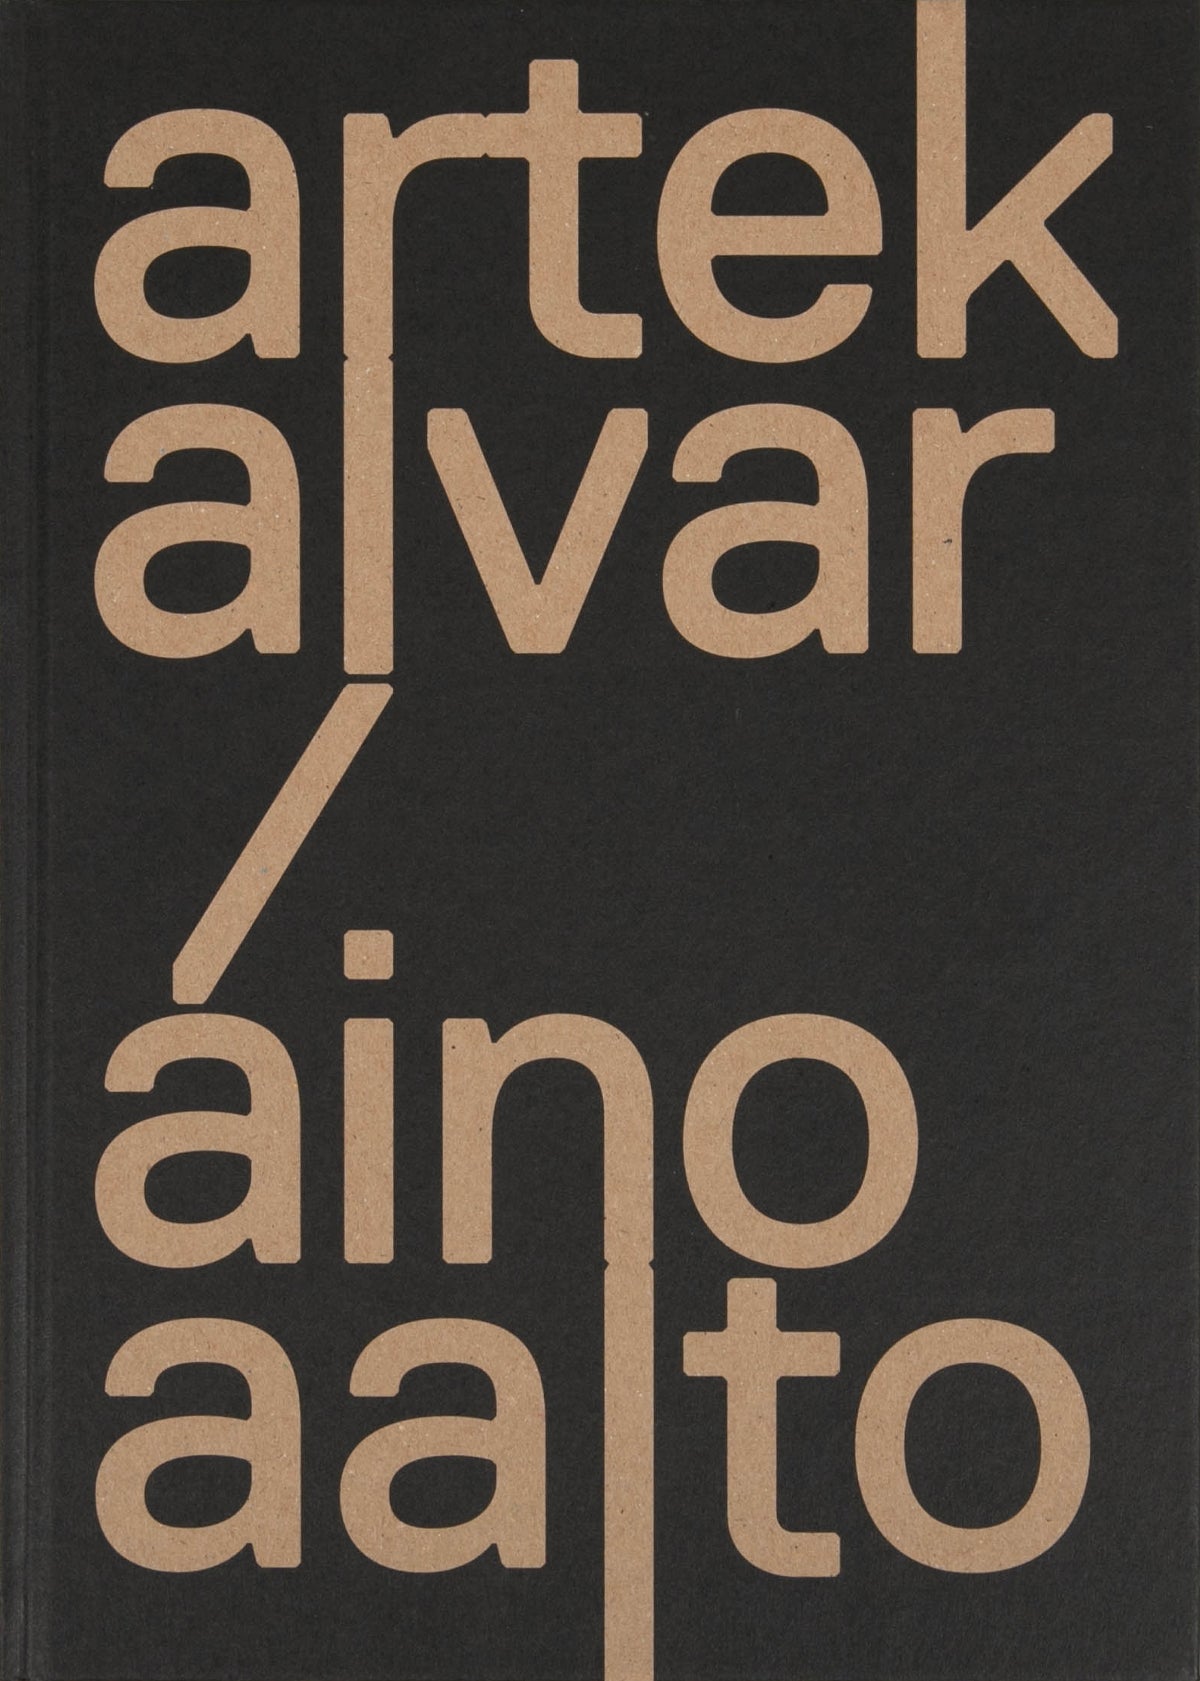 Artek and the Aaltos: Creating a Modern World